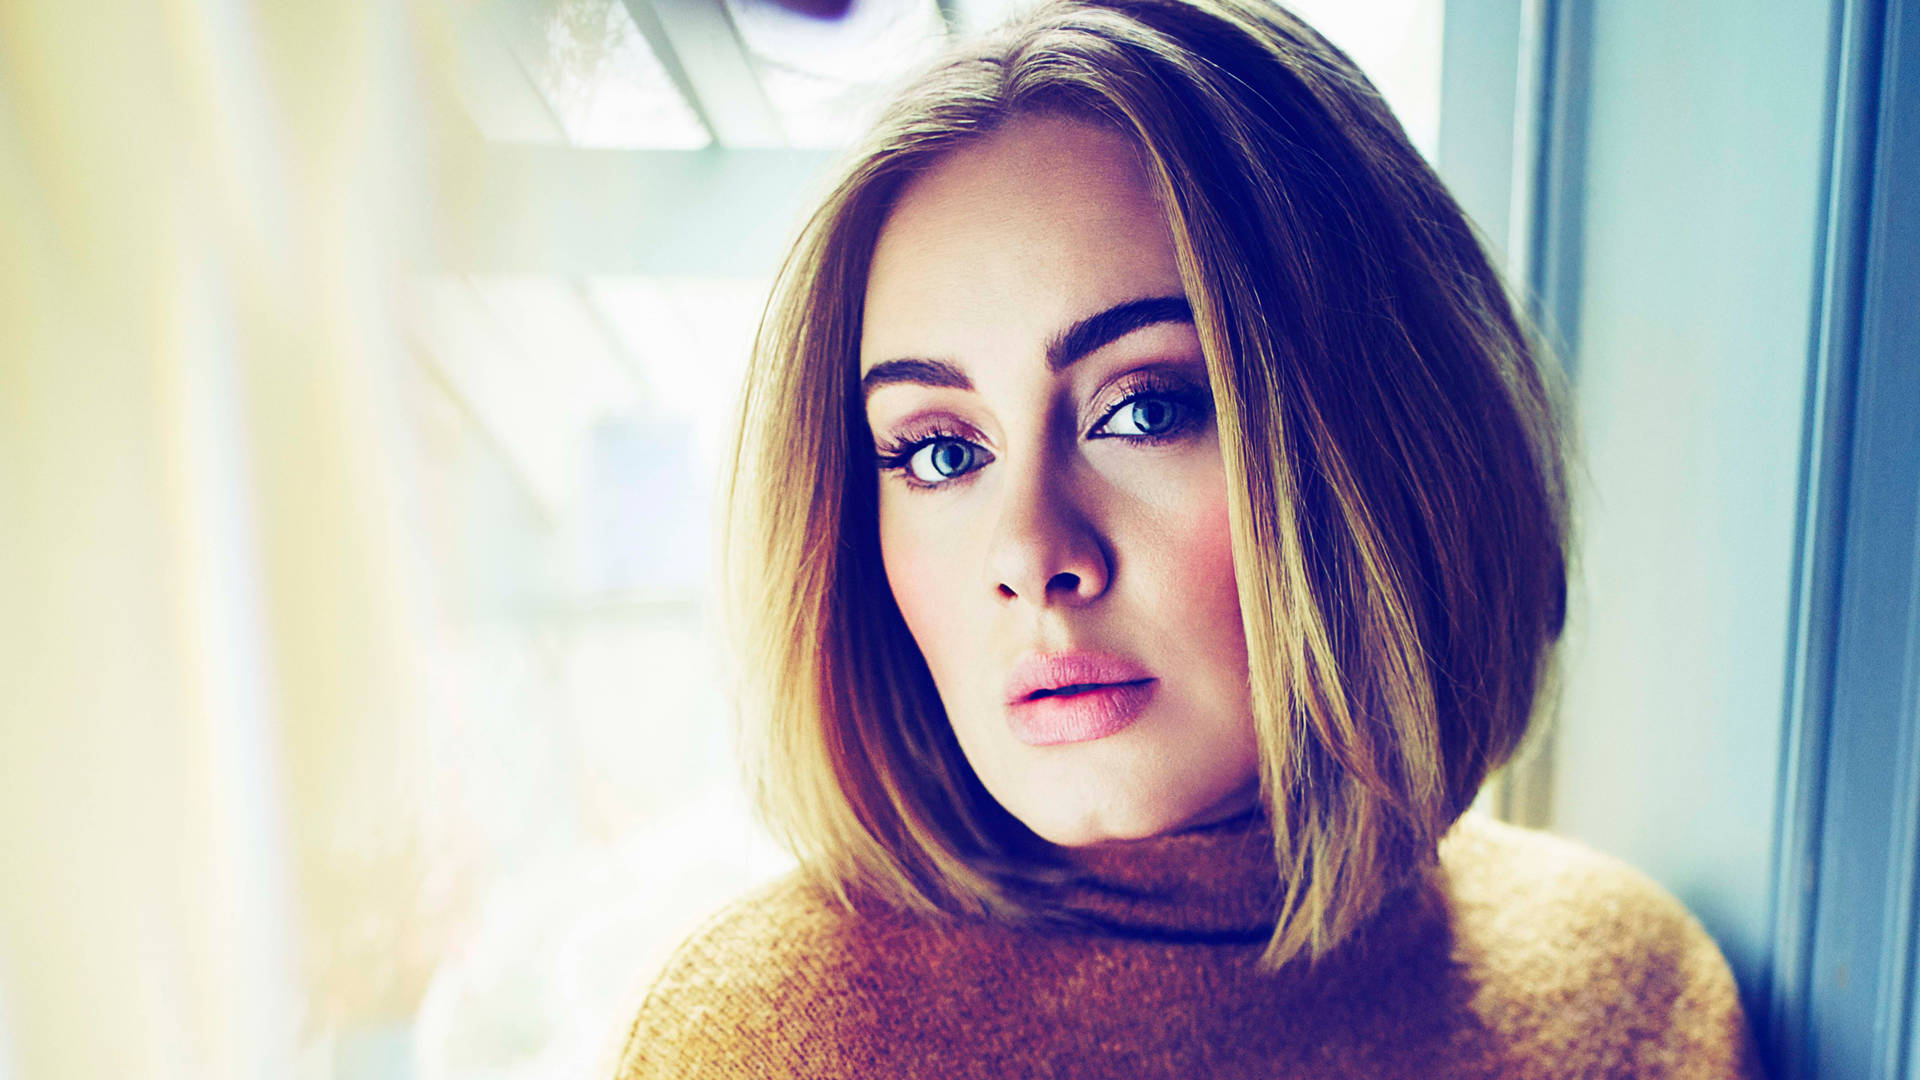 Adele Short Hair Photoshoot Wallpaper